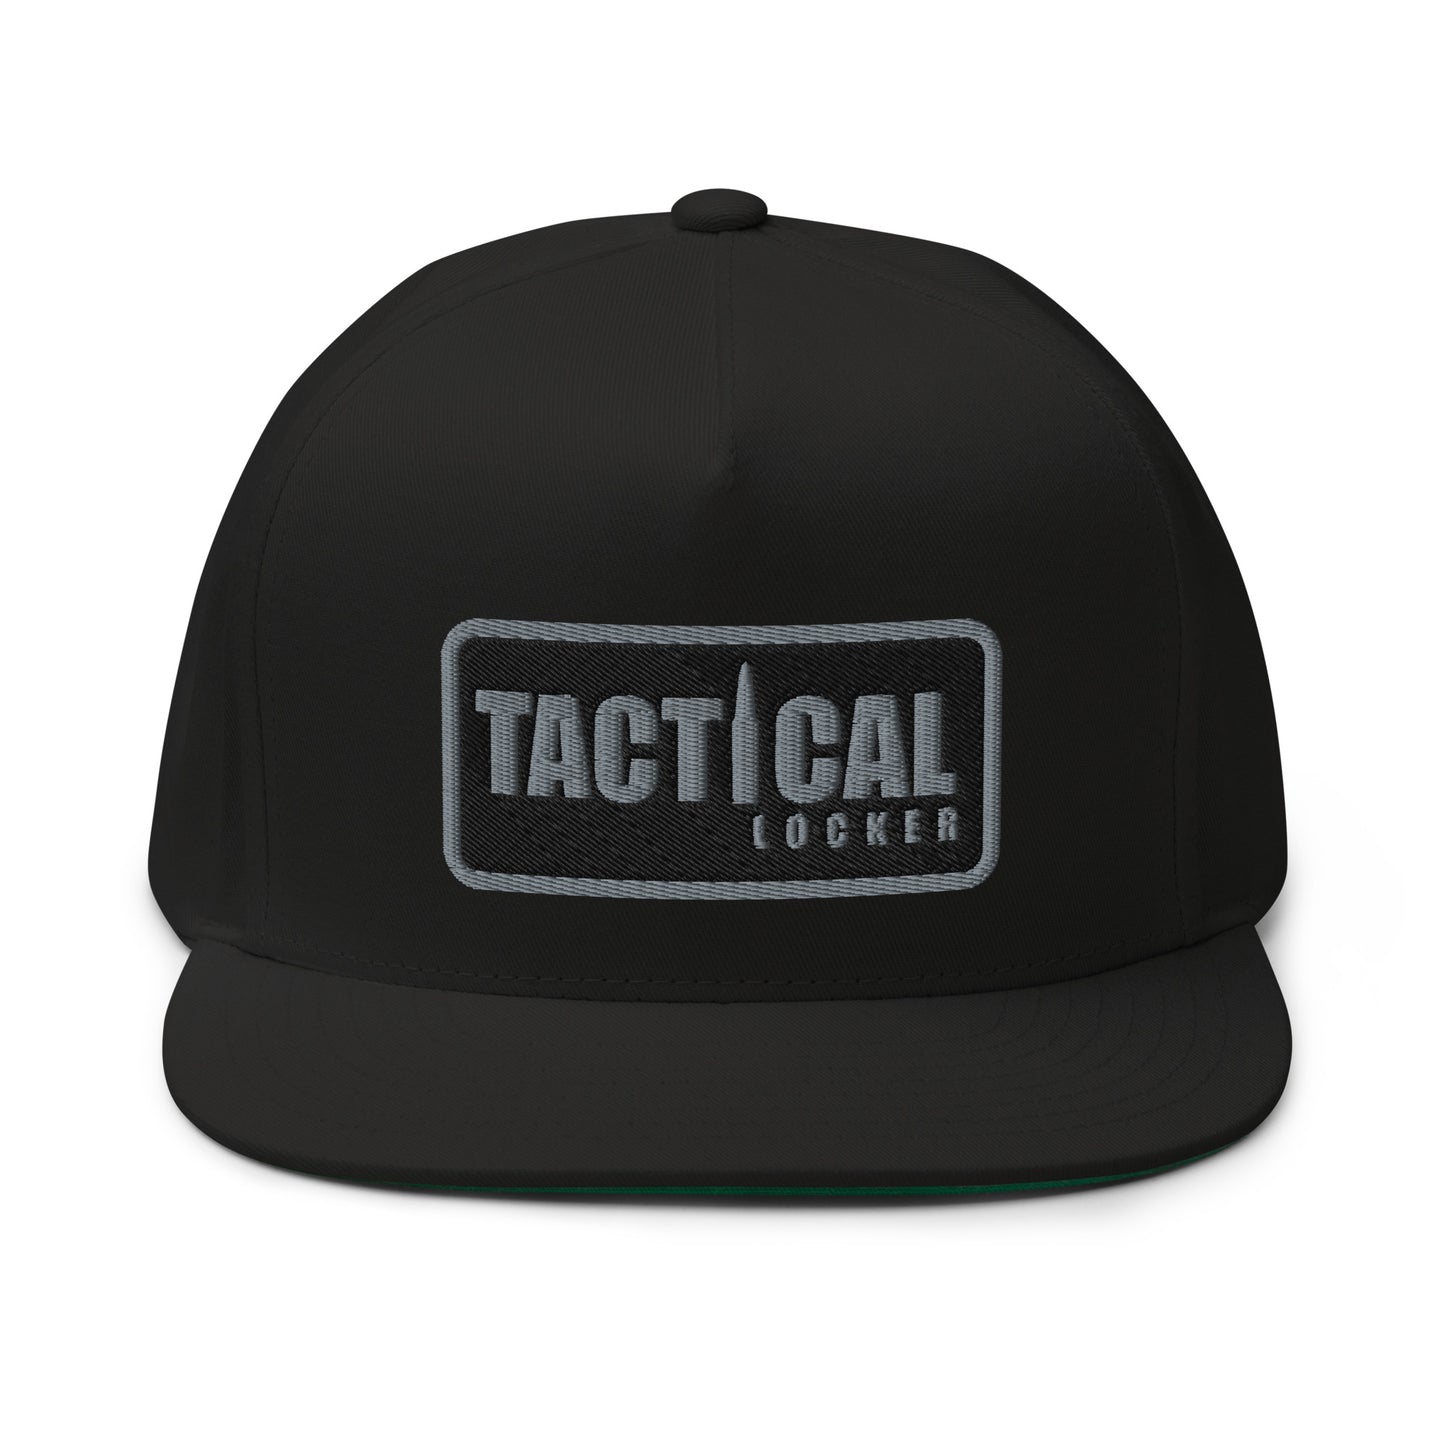 Tactical Locker Flat Bill Cap